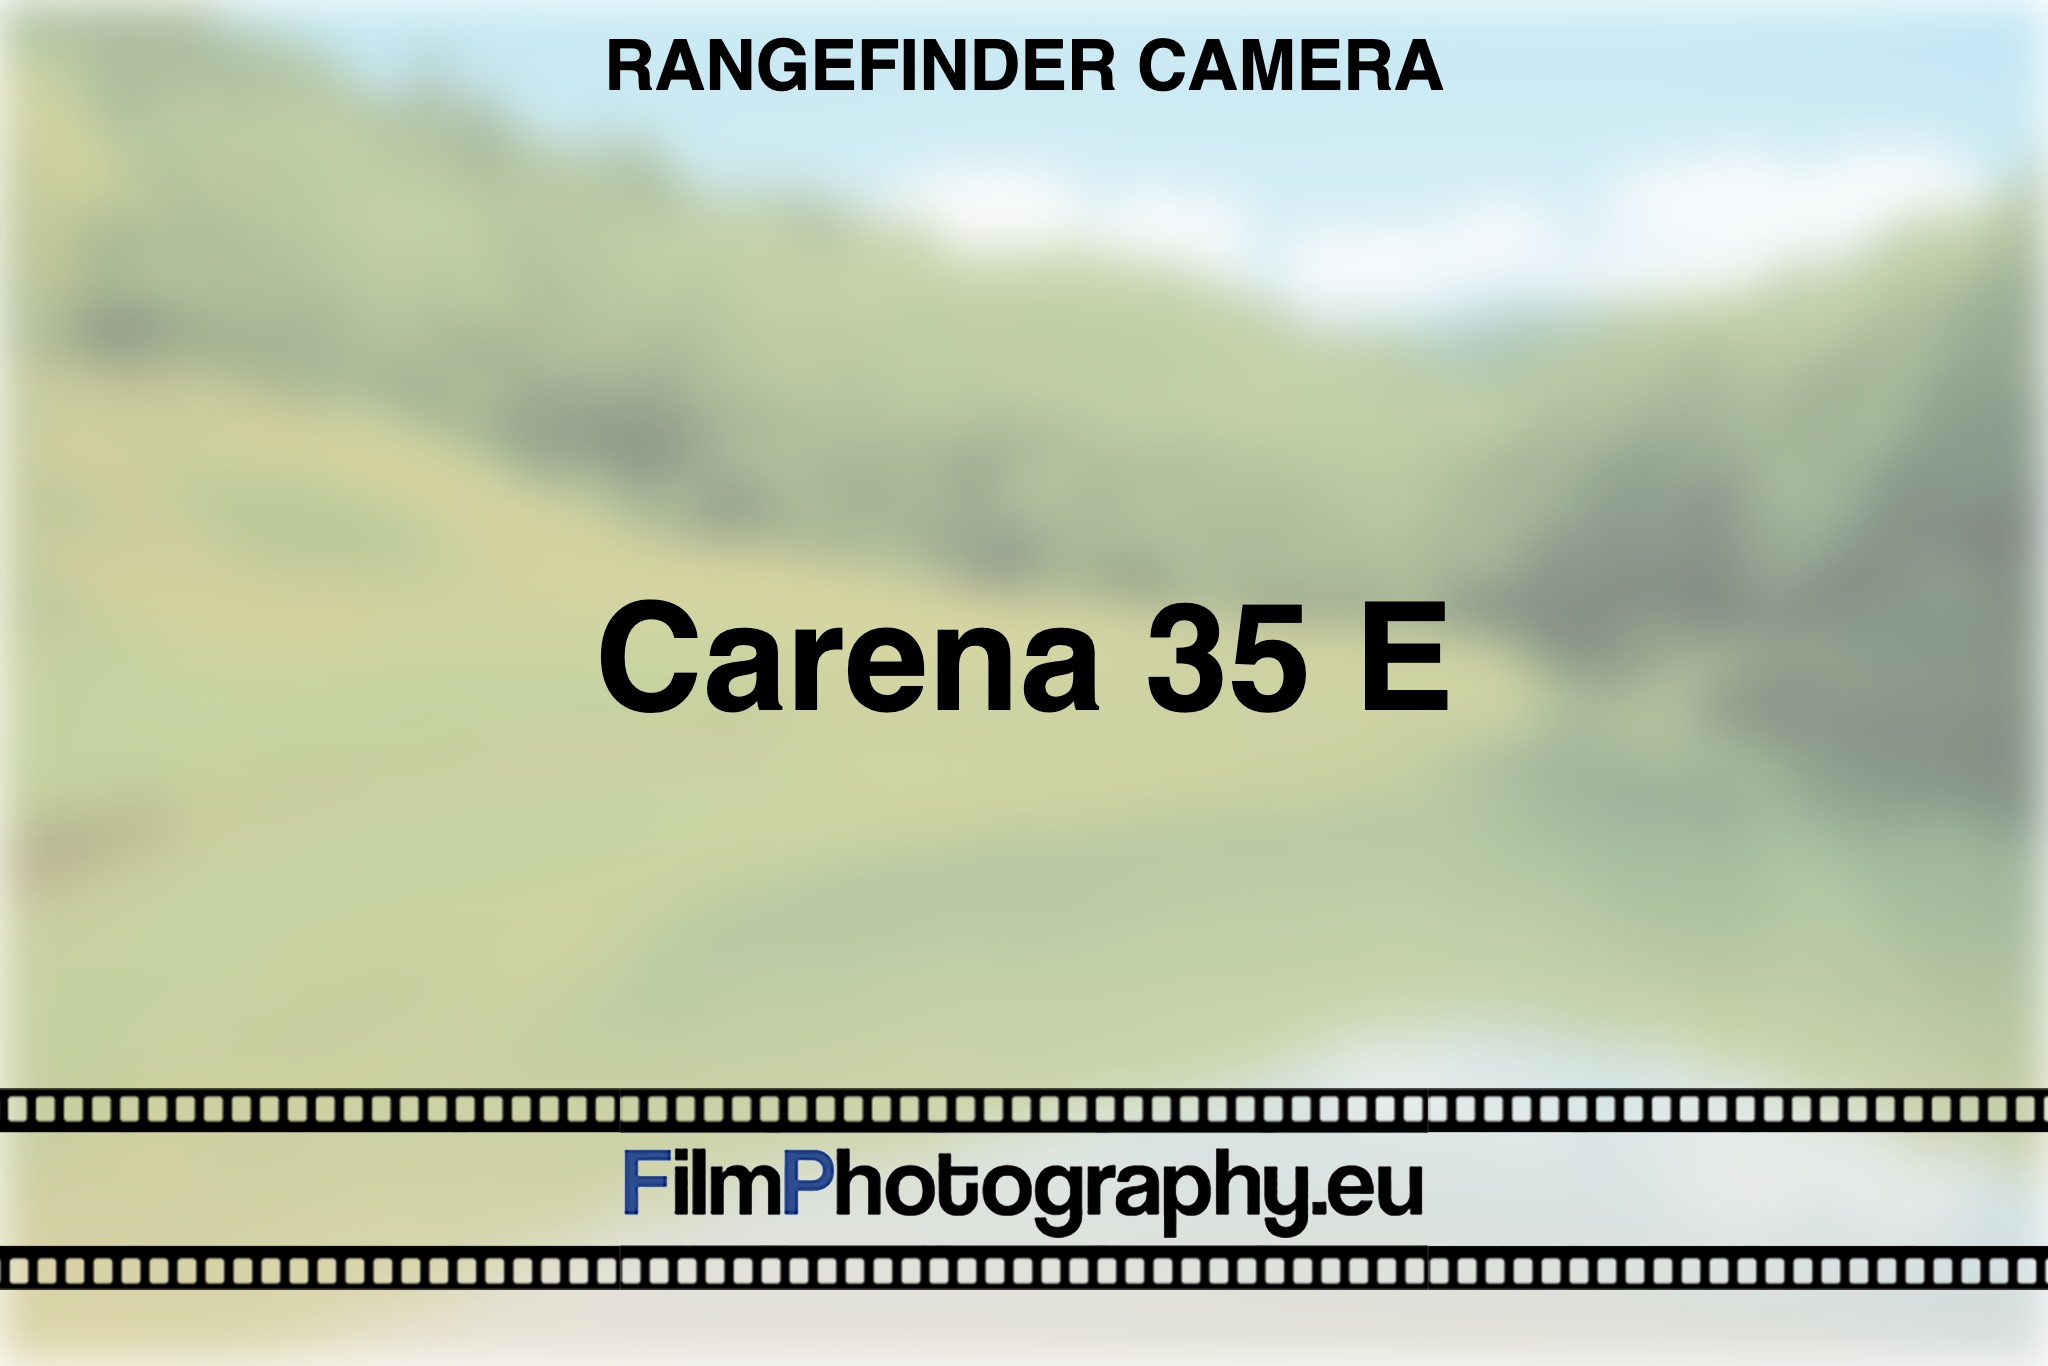 carena-35-e-rangefinder-camera-bnv